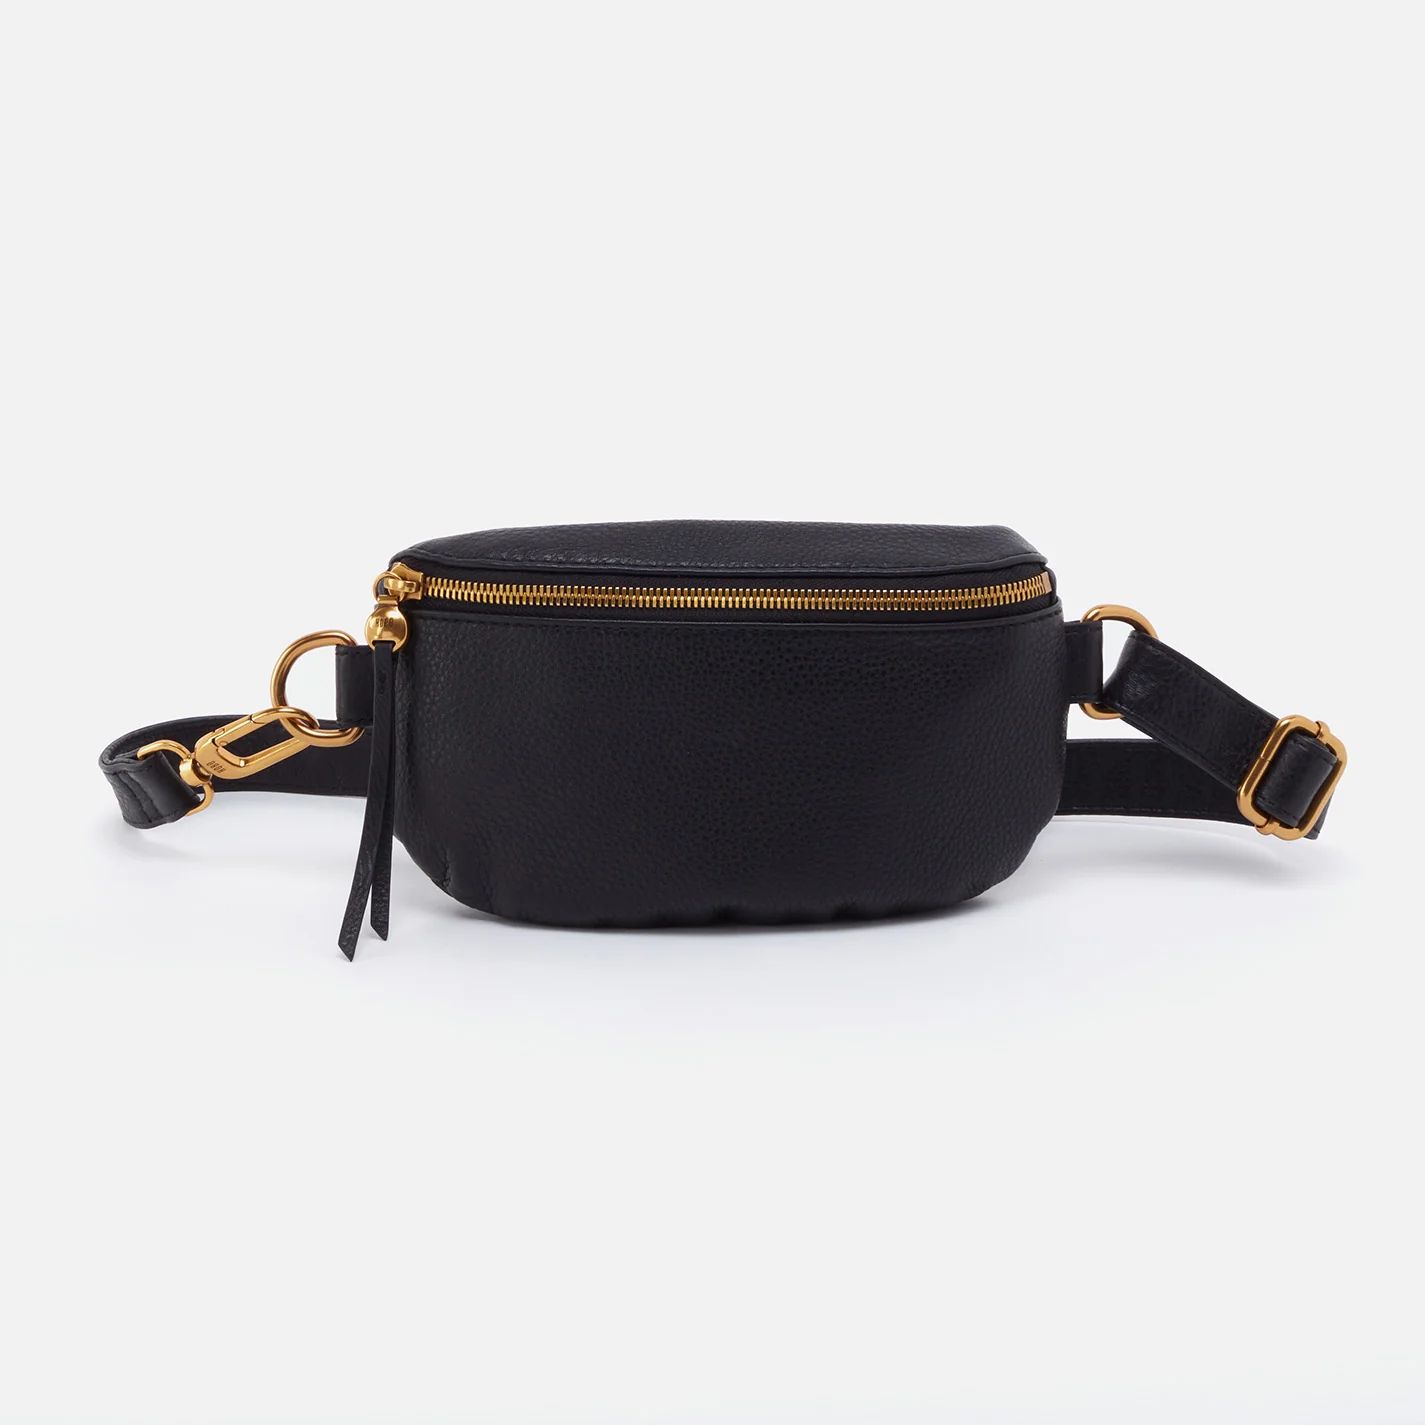 Fern Belt Bag in Pebbled Leather - Sandstorm | HOBO Bags